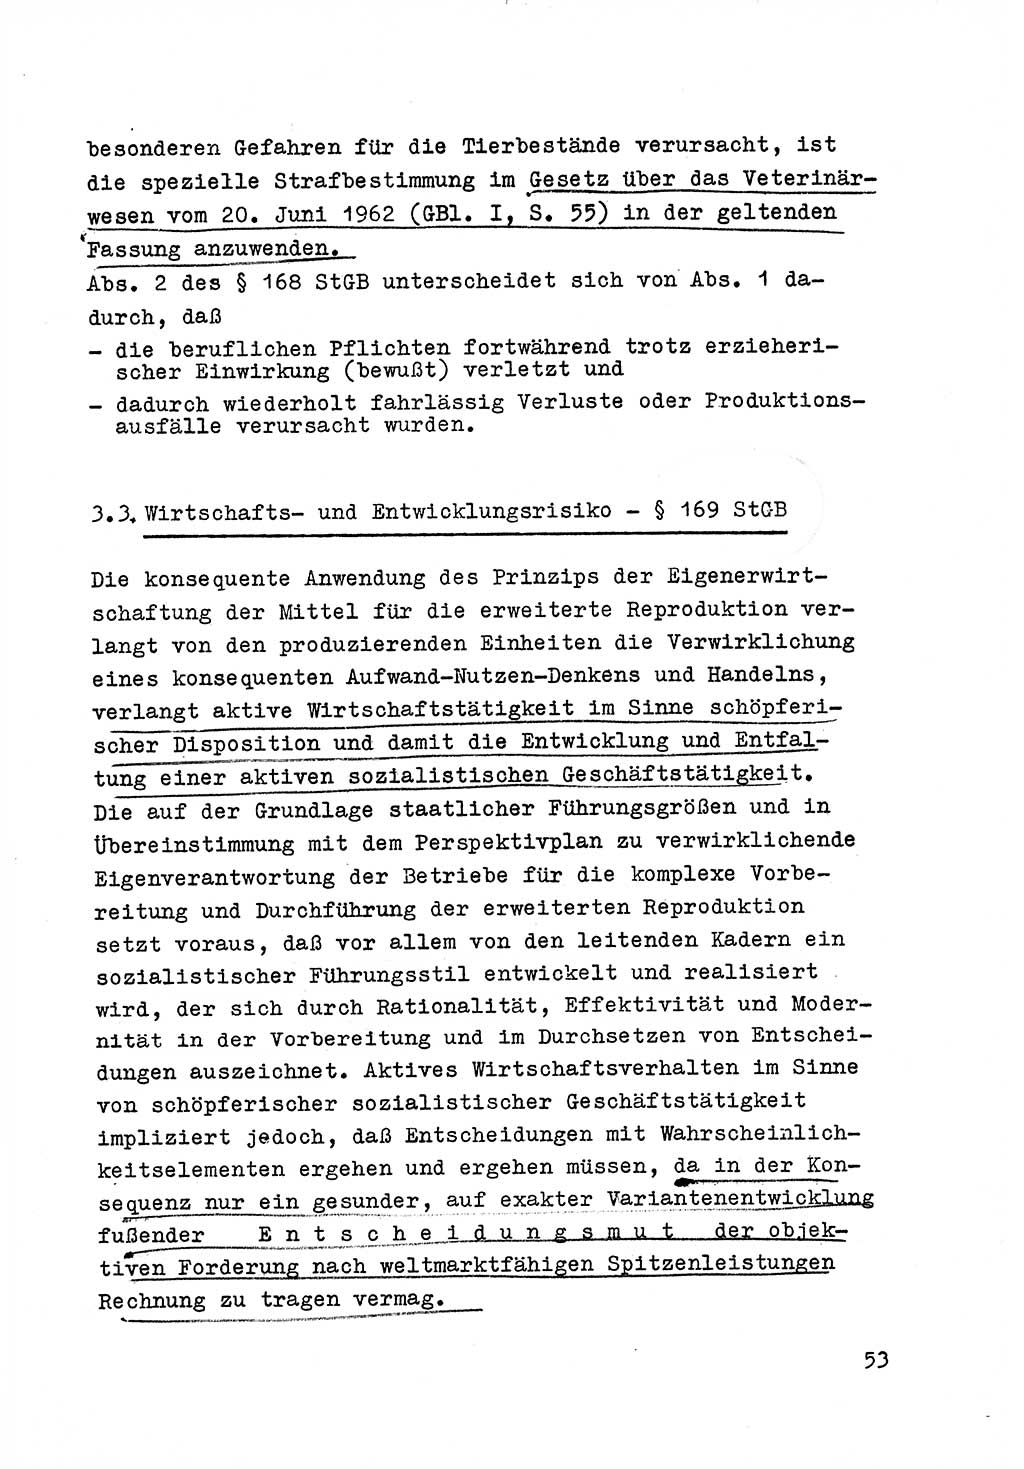 Strafrecht der DDR (Deutsche Demokratische Republik), Besonderer Teil, Lehrmaterial, Heft 6 1970, Seite 53 (Strafr. DDR BT Lehrmat. H. 6 1970, S. 53)